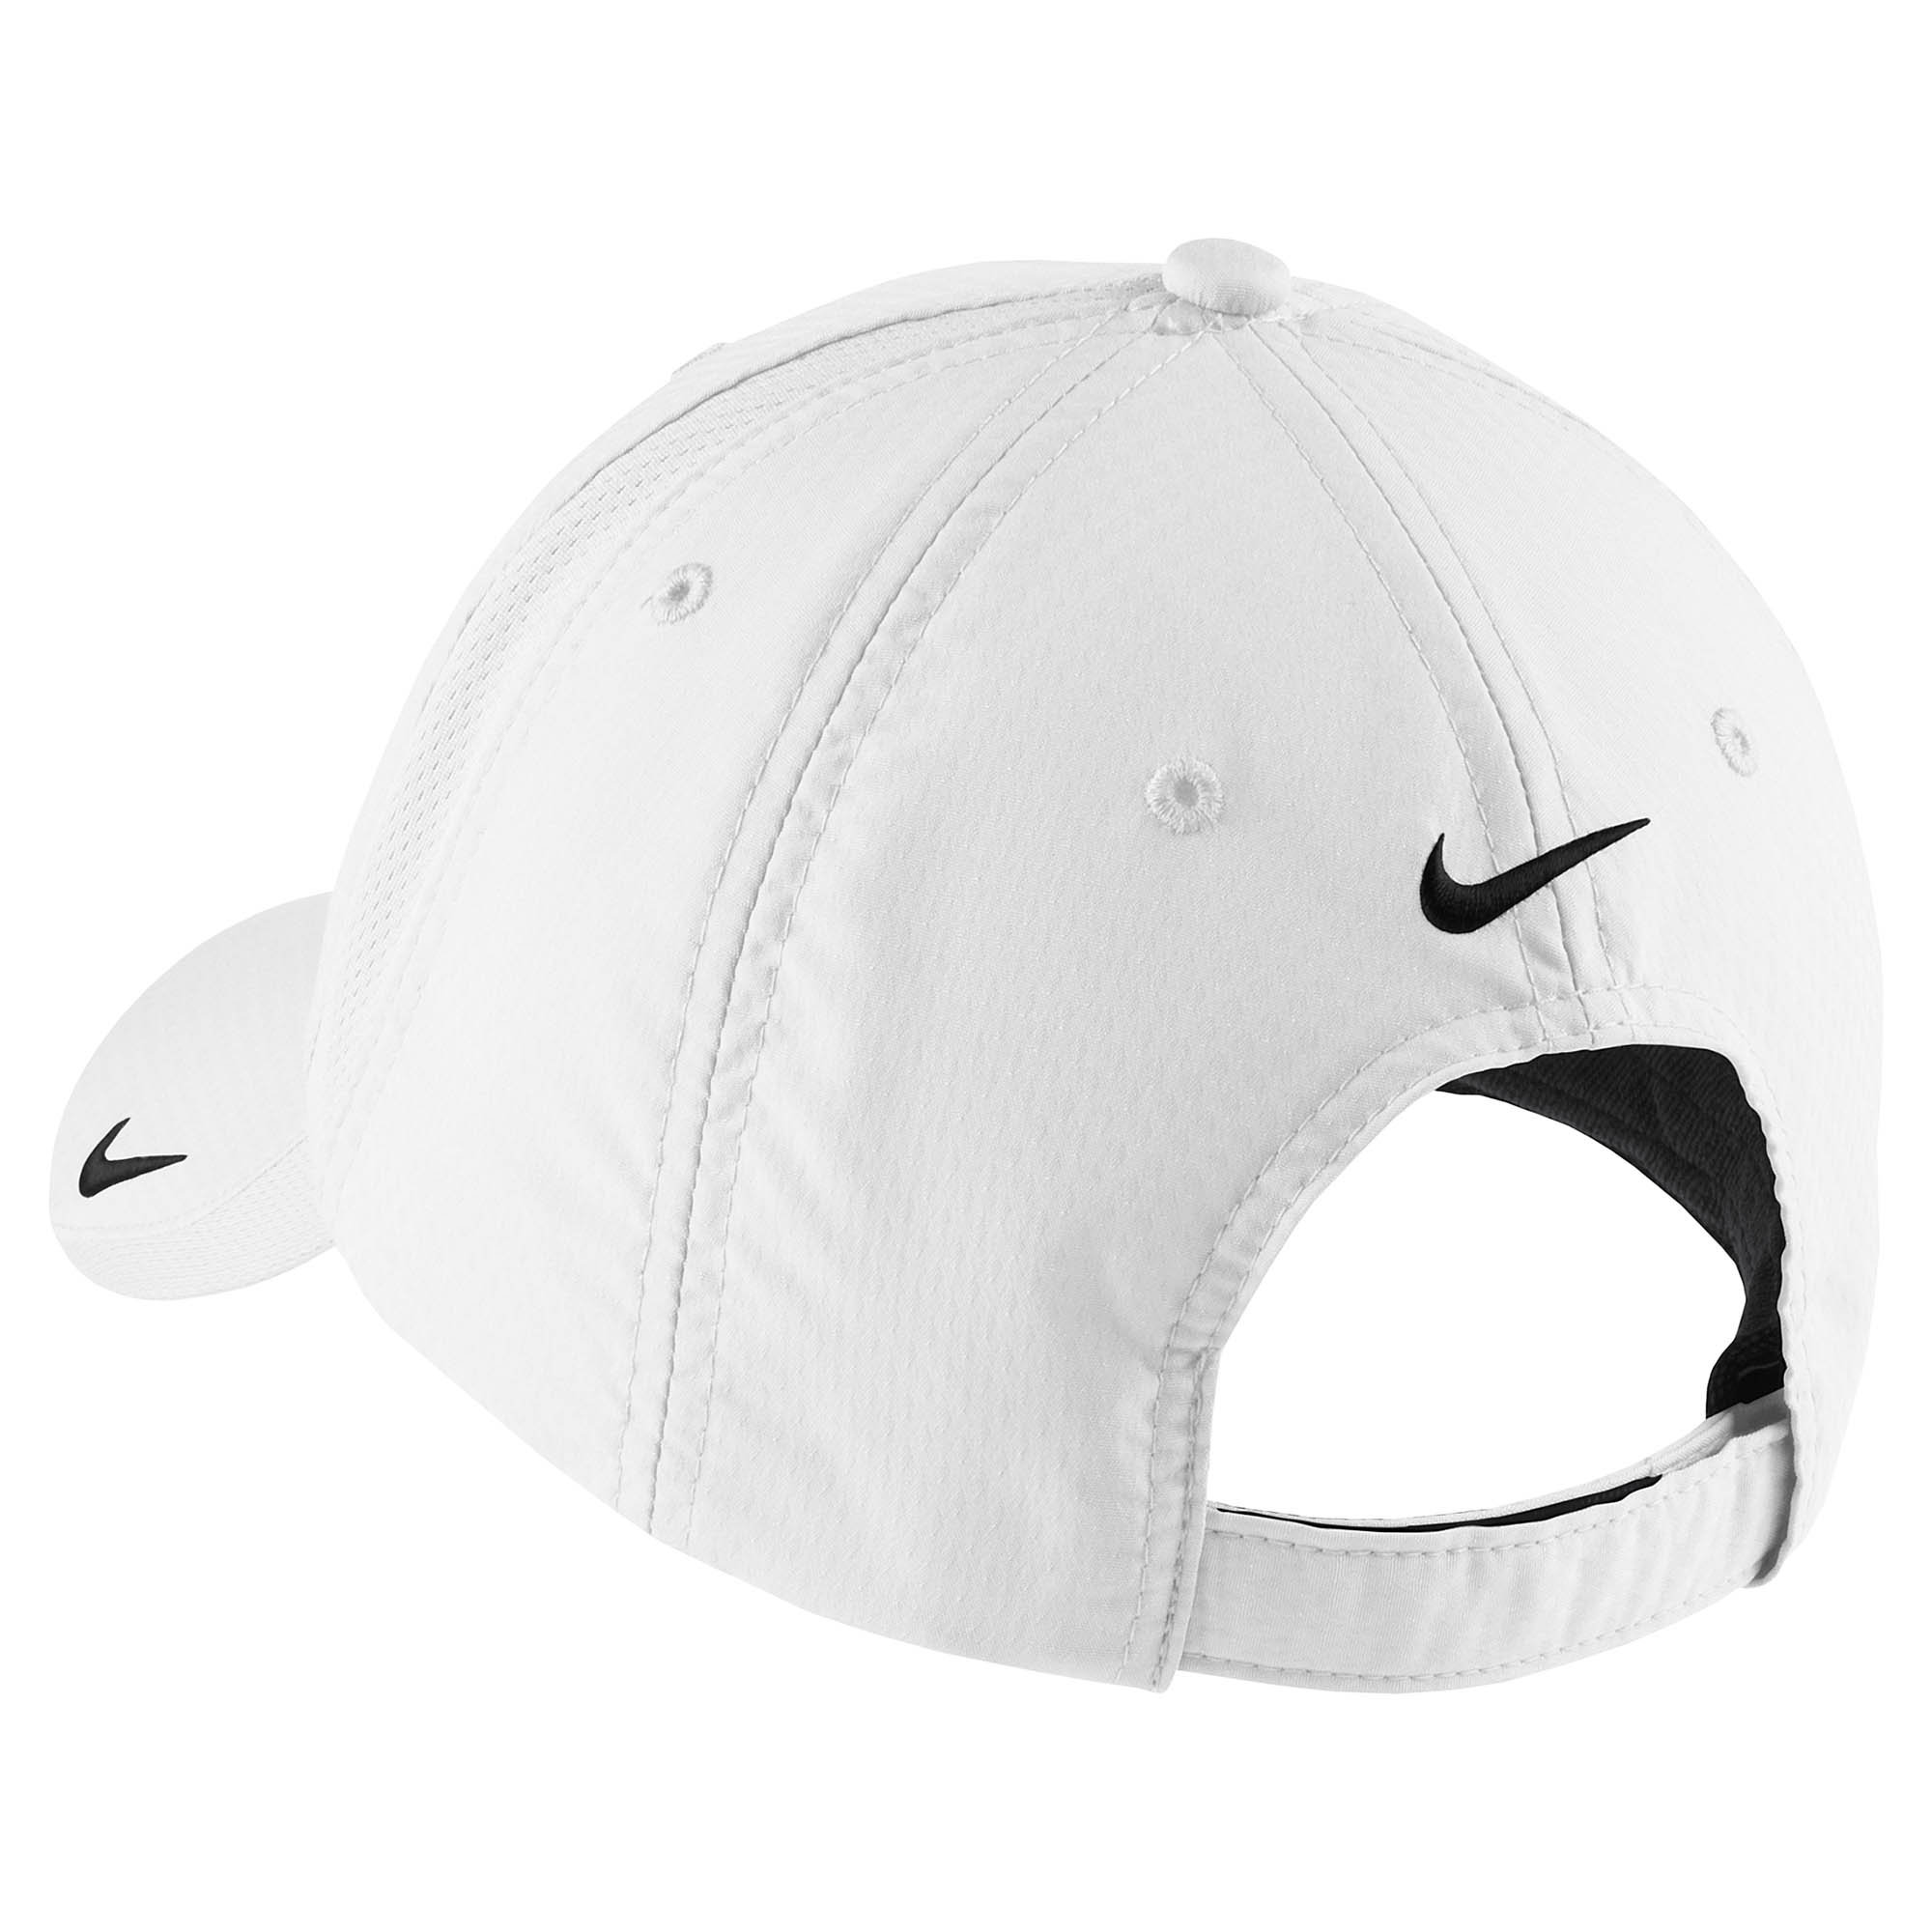 Nike 247077 Sphere Dry Cap - White | FullSource.com